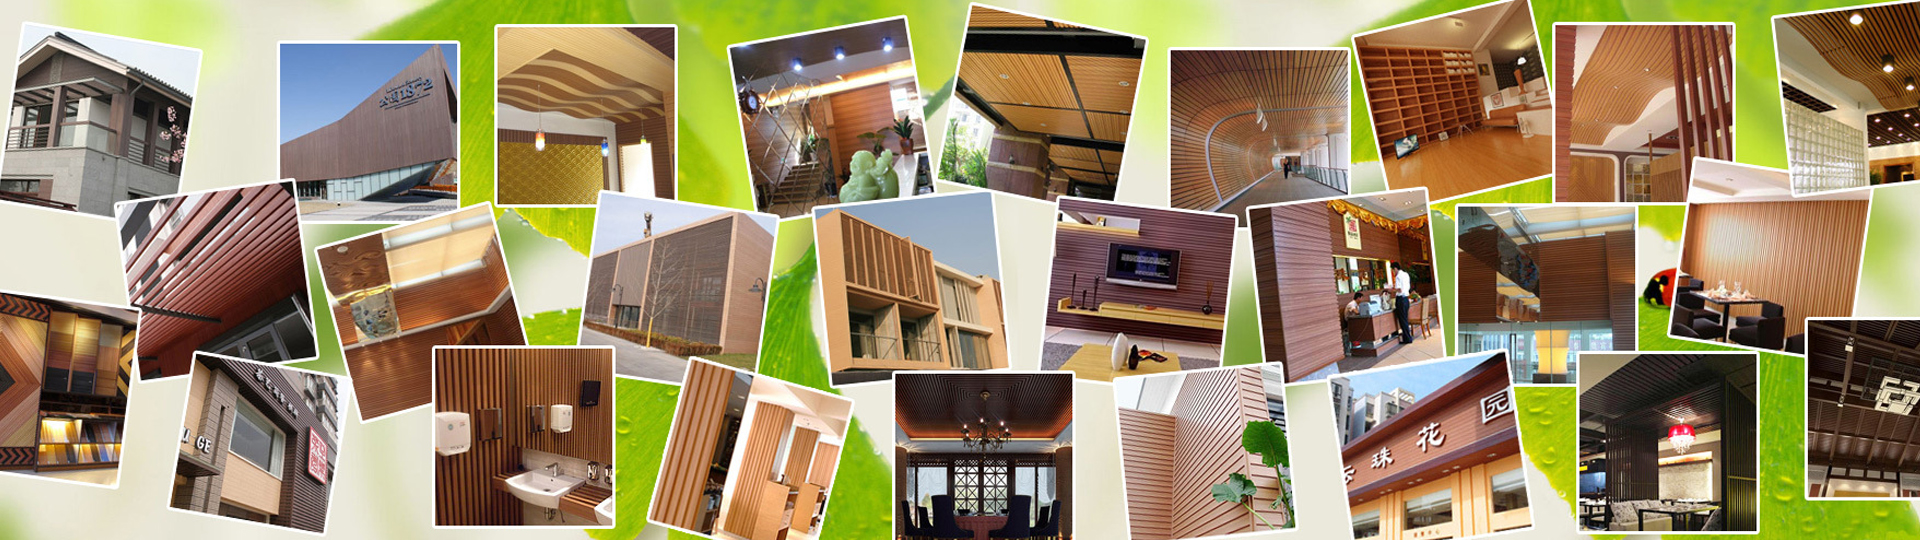 耐可木官网,生态木,耐可木生态木,生态木厂家,生态木吊顶,生态木墙板,生态木护墙板,生态木材料,生态木方通,木塑地板